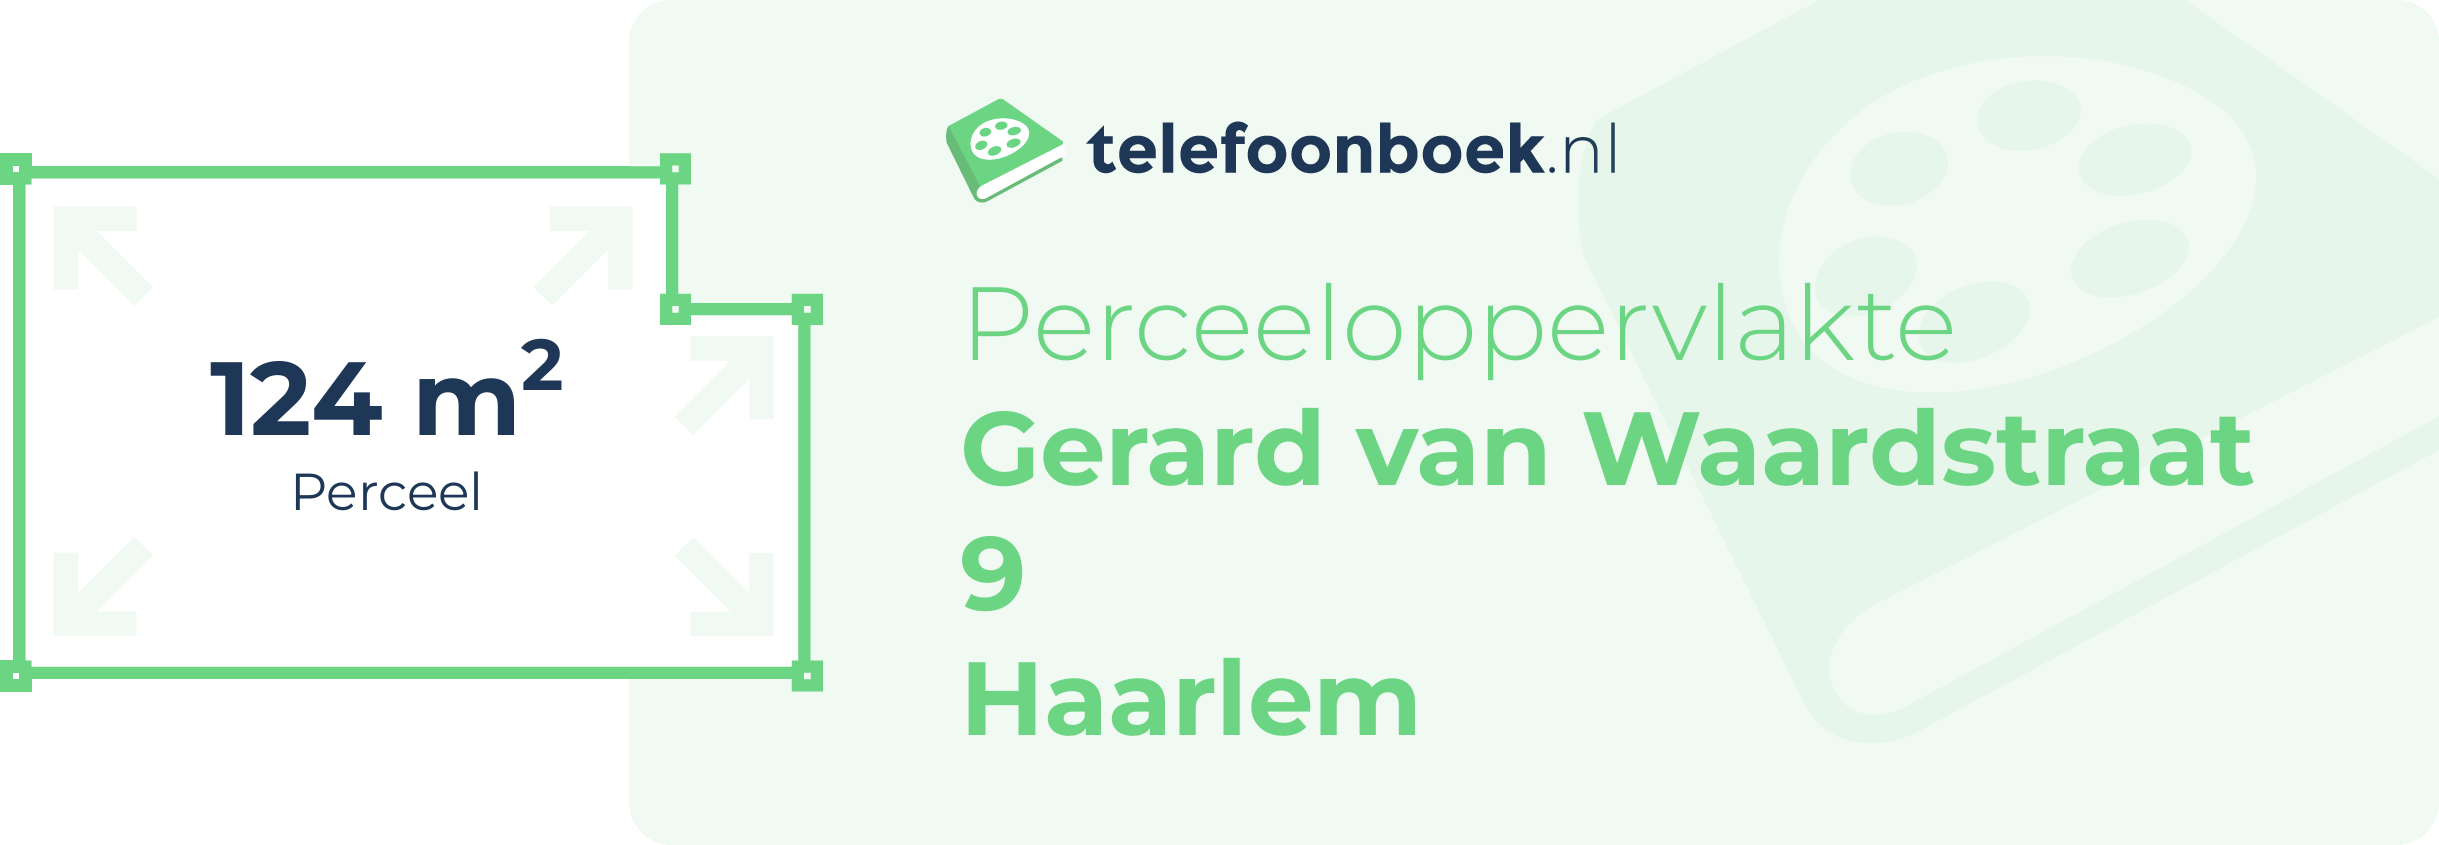 Perceeloppervlakte Gerard Van Waardstraat 9 Haarlem